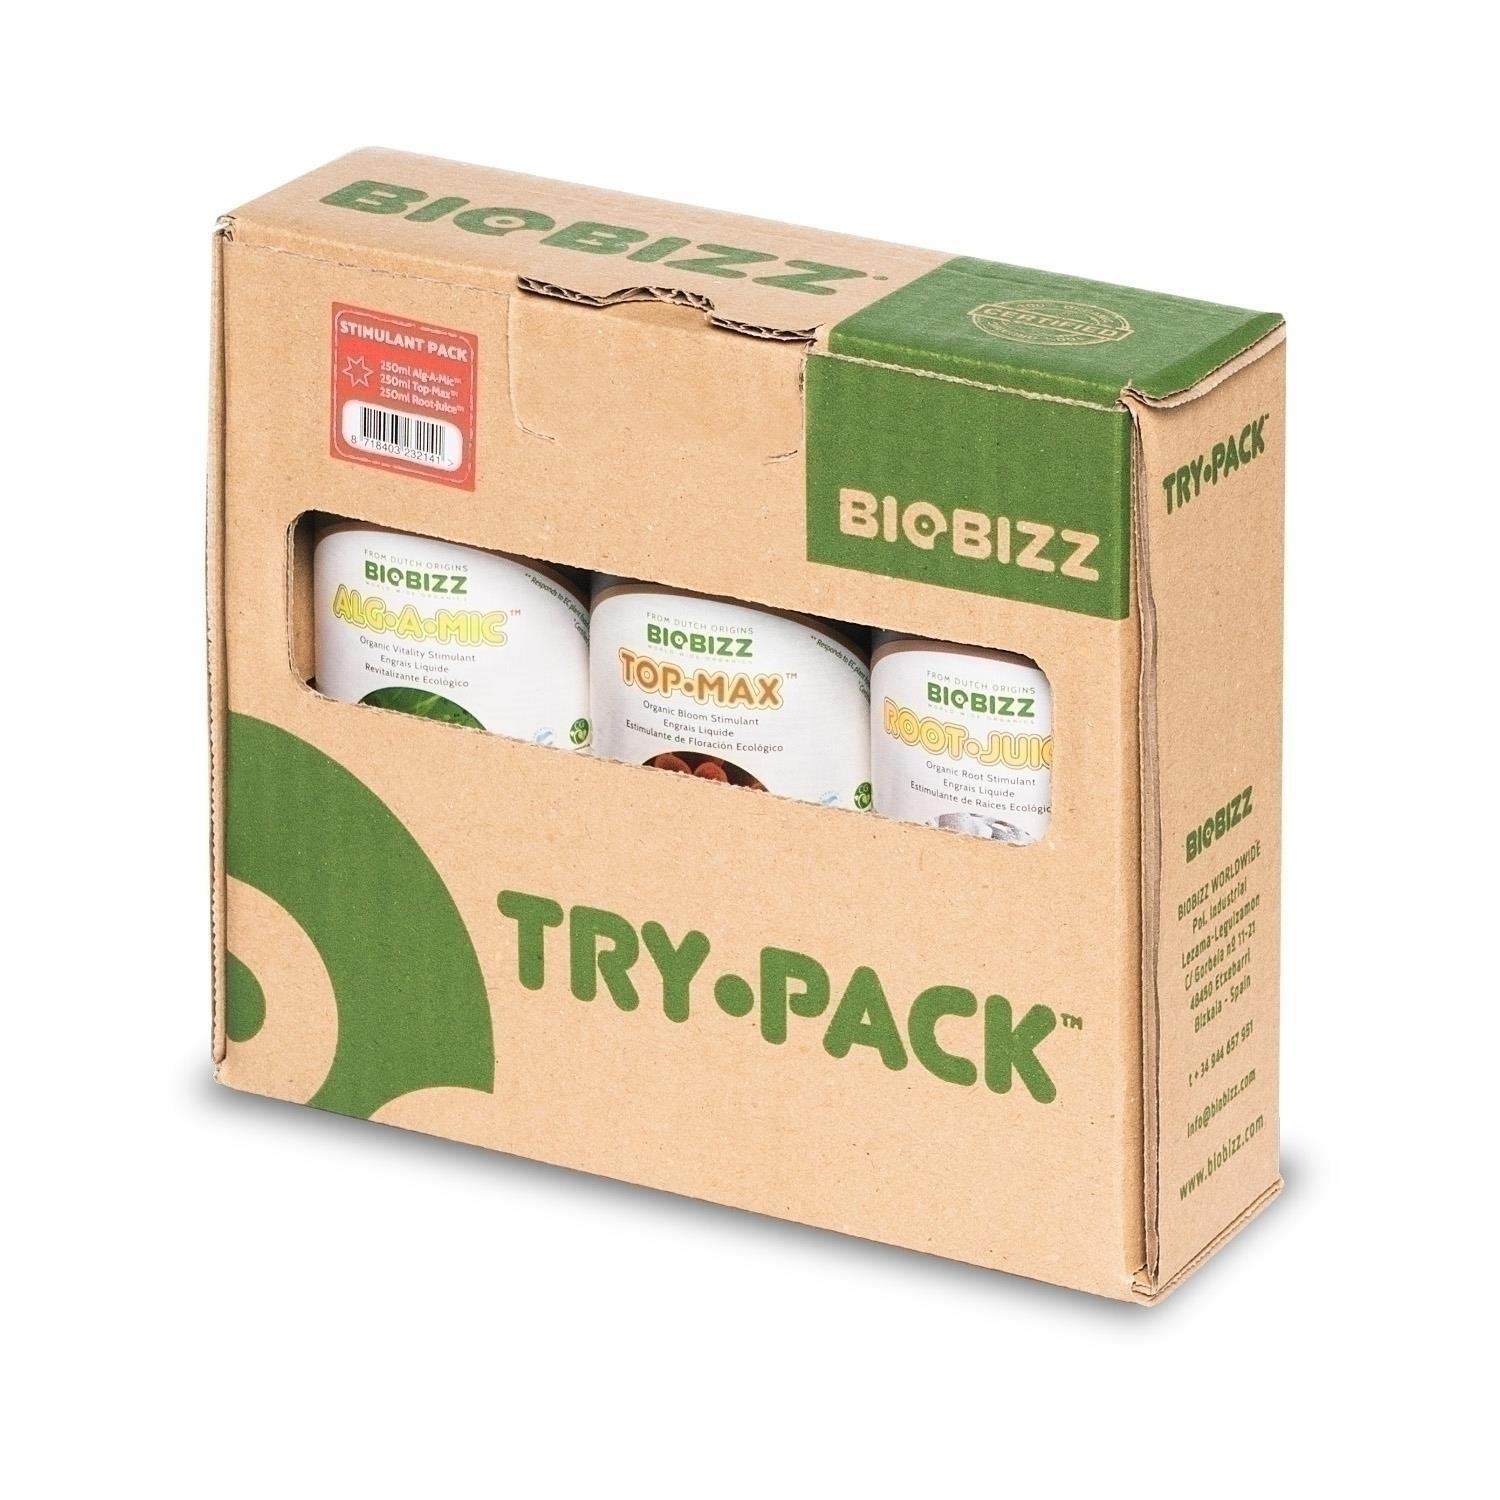 BioBizz Try-Pack Stimulant